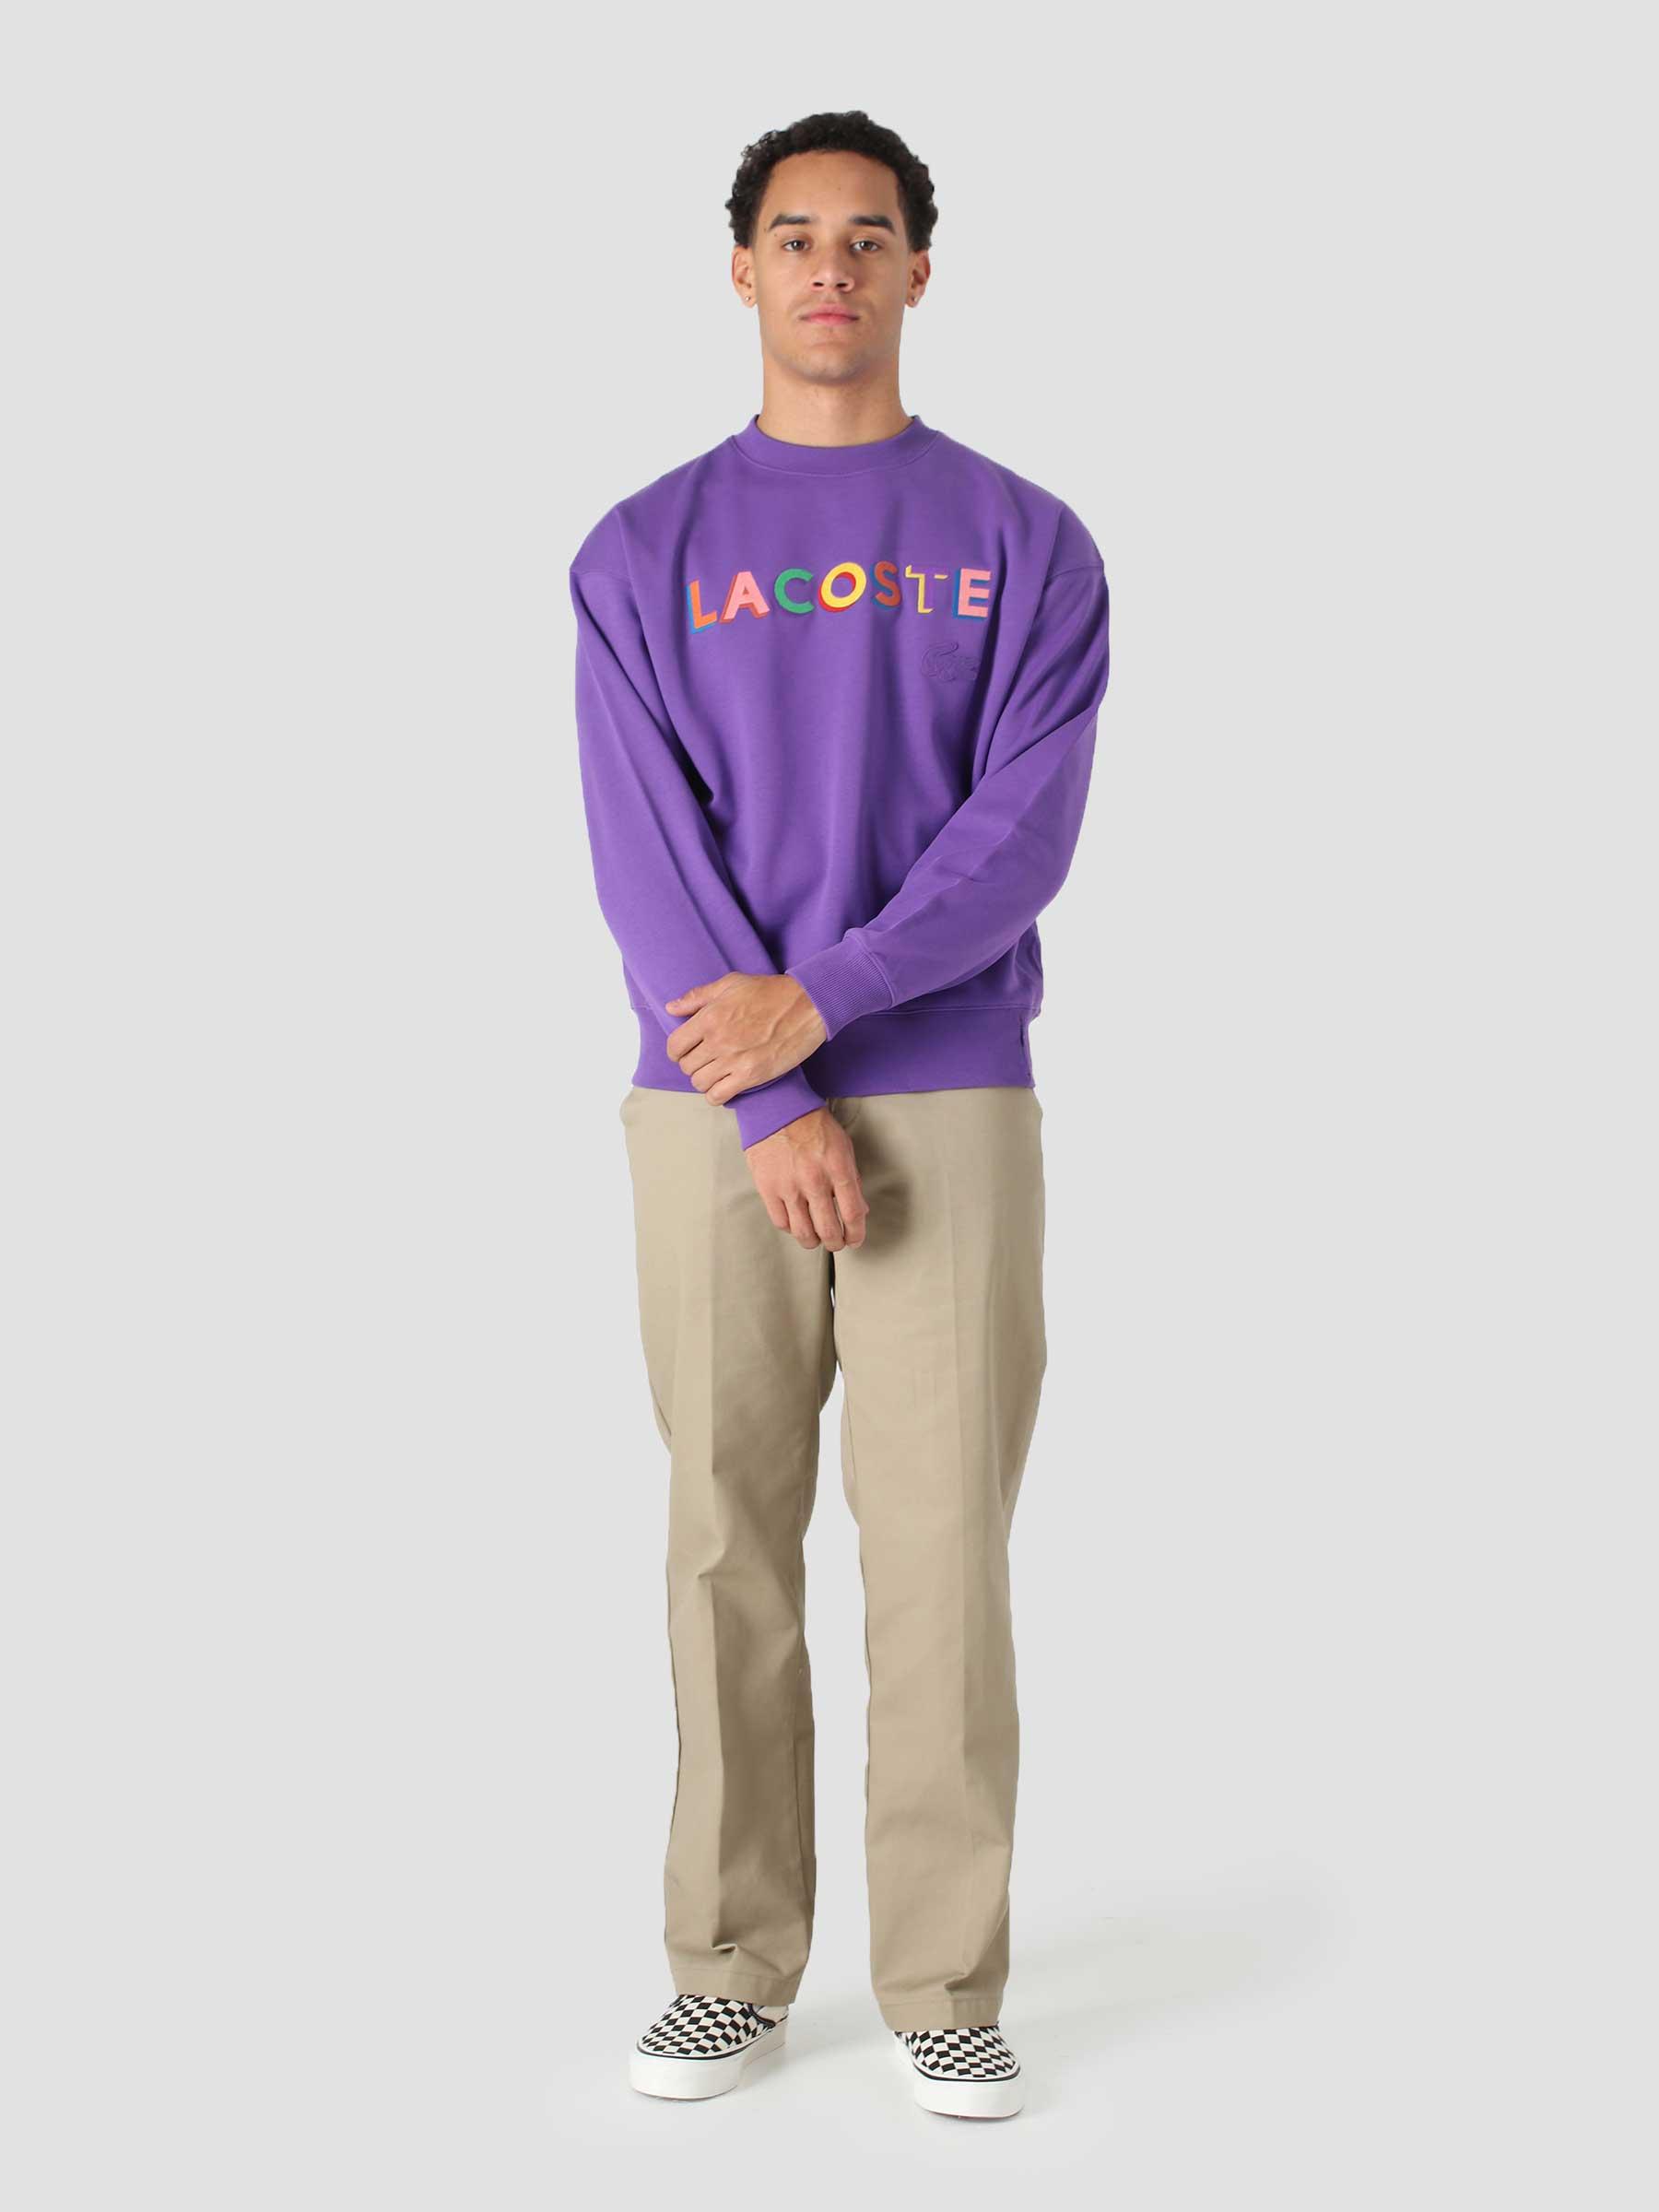 1HS1 Men's Sweatshirt 07 Lavender SH7277-13